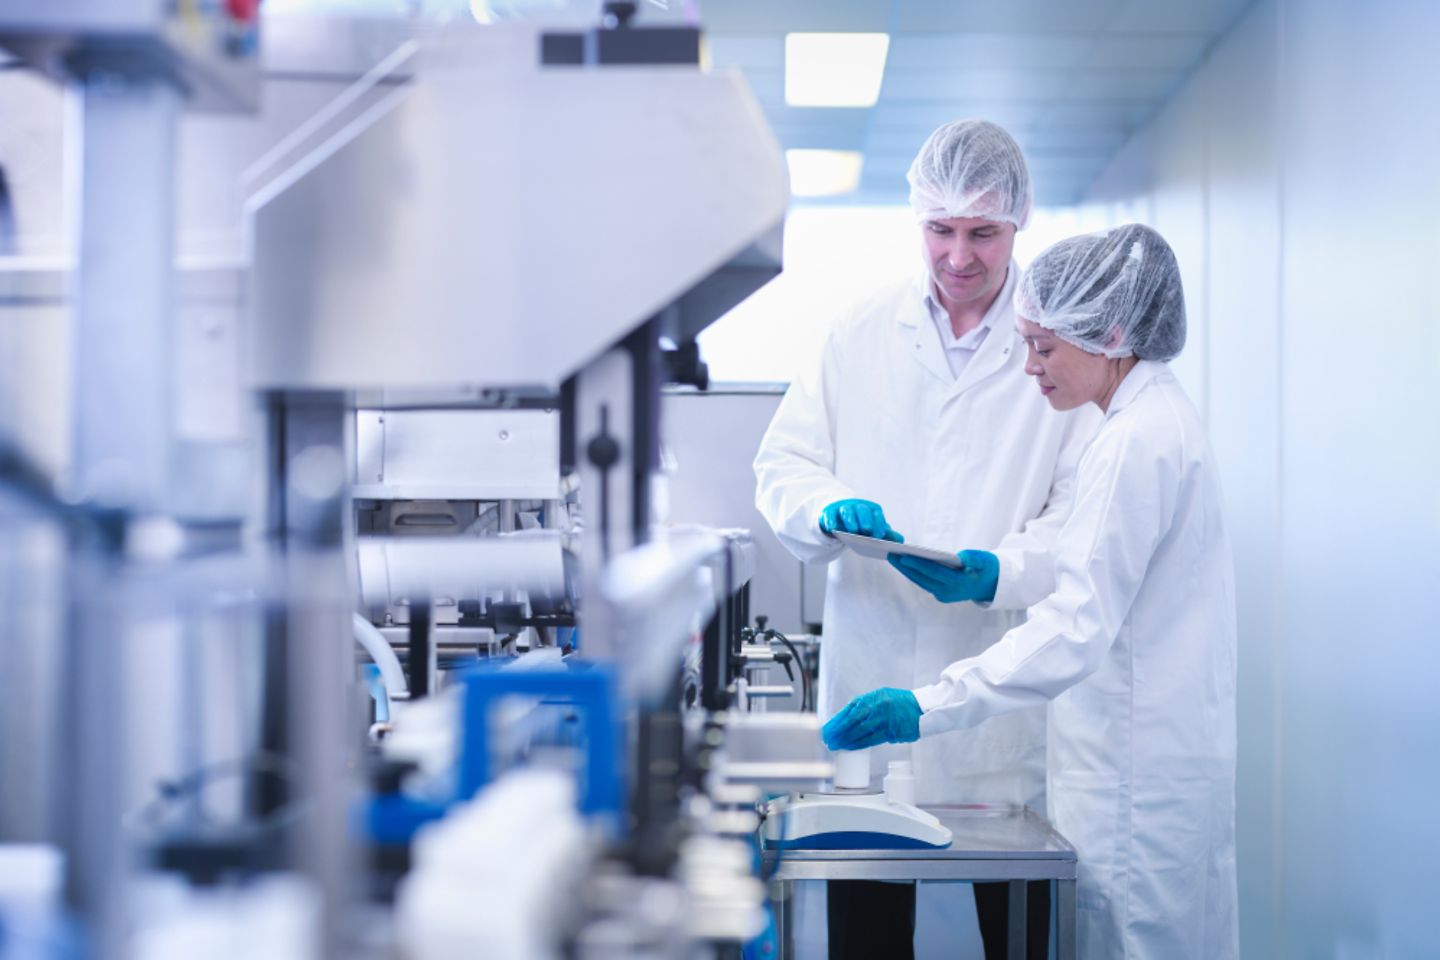 Operadores inspecionam um produto em uma fábrica de produtos farmacêuticos.